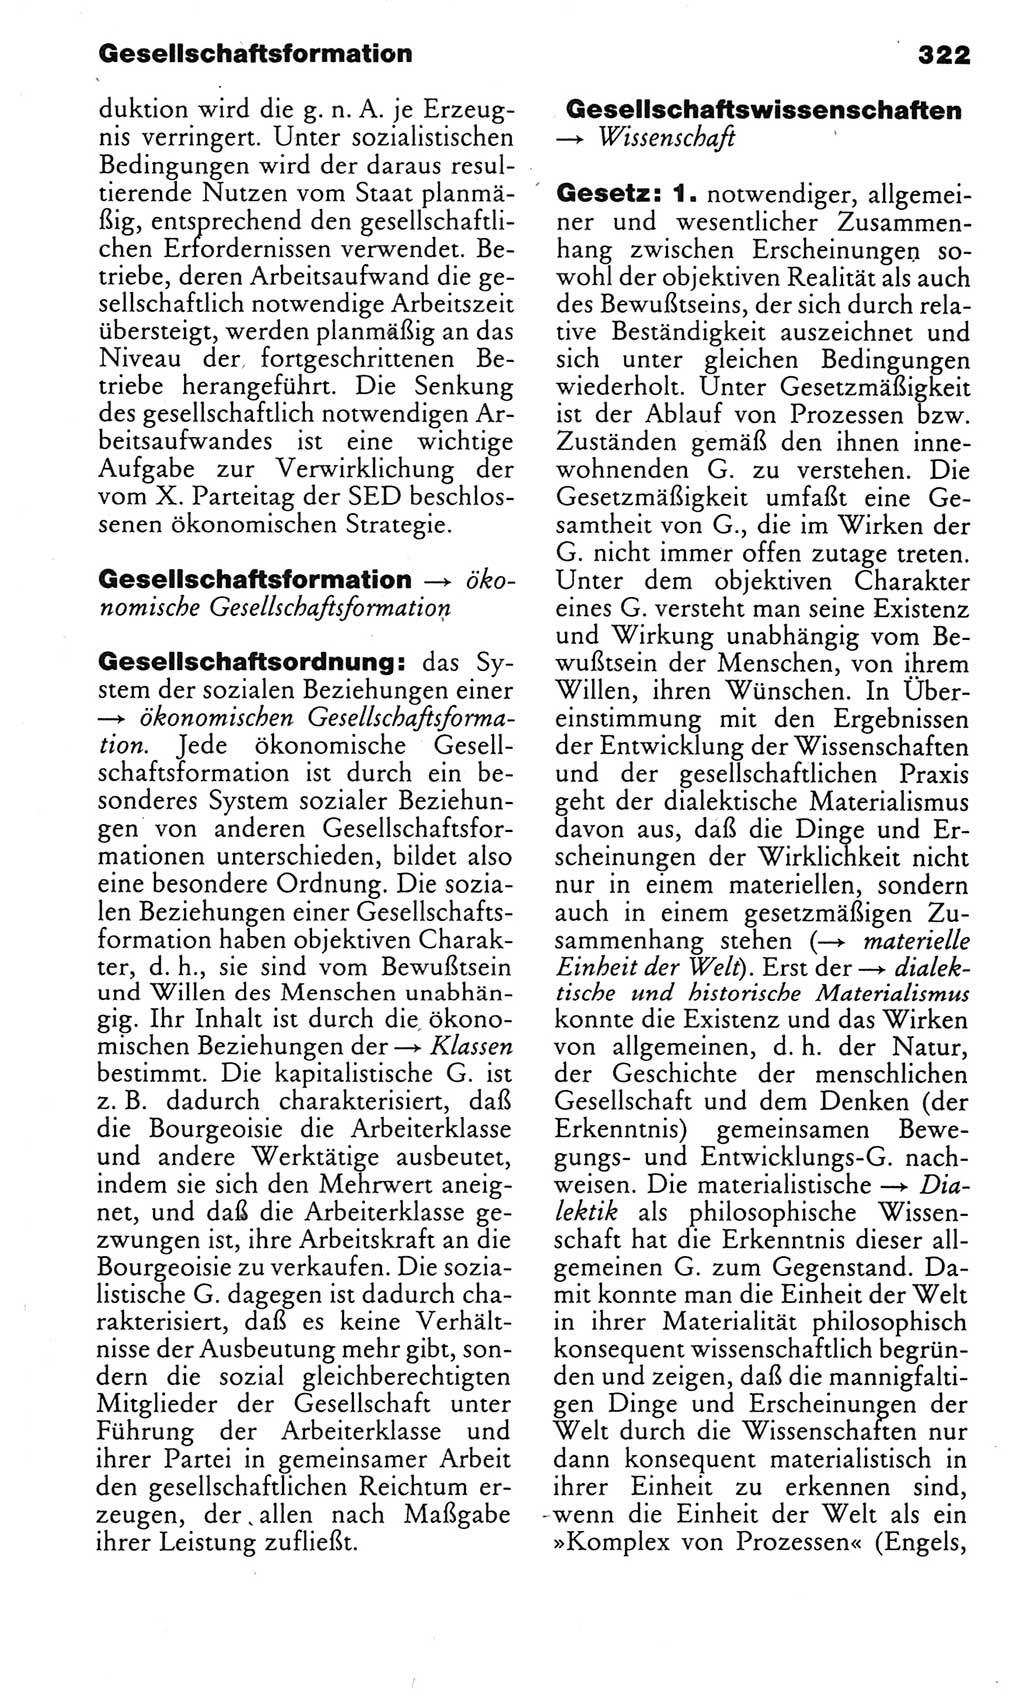 Kleines politisches Wörterbuch [Deutsche Demokratische Republik (DDR)] 1985, Seite 322 (Kl. pol. Wb. DDR 1985, S. 322)